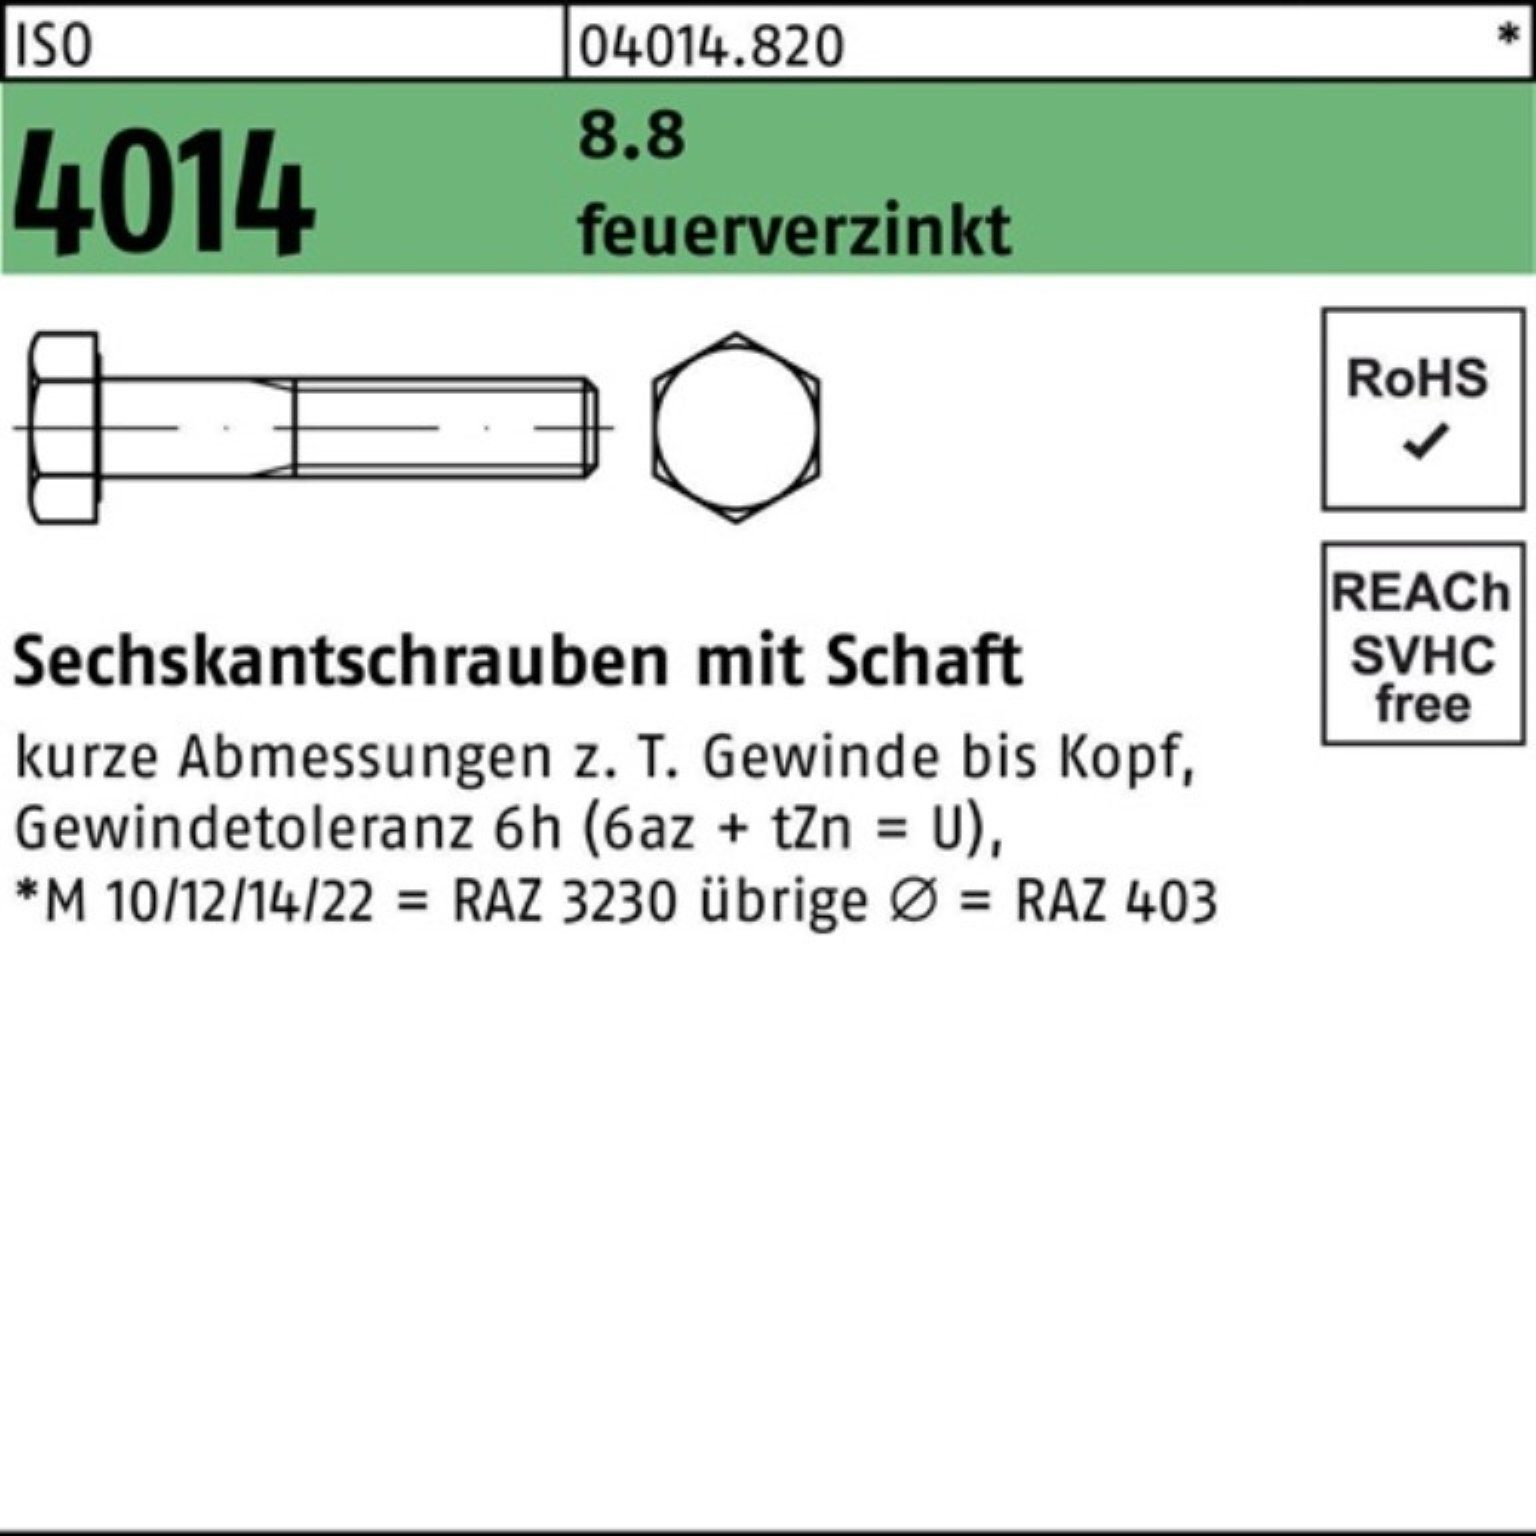 Bufab Sechskantschraube 100er Pack Sechskantschraube ISO 4014 Schaft M12x 150 8.8 feuerverz. 5